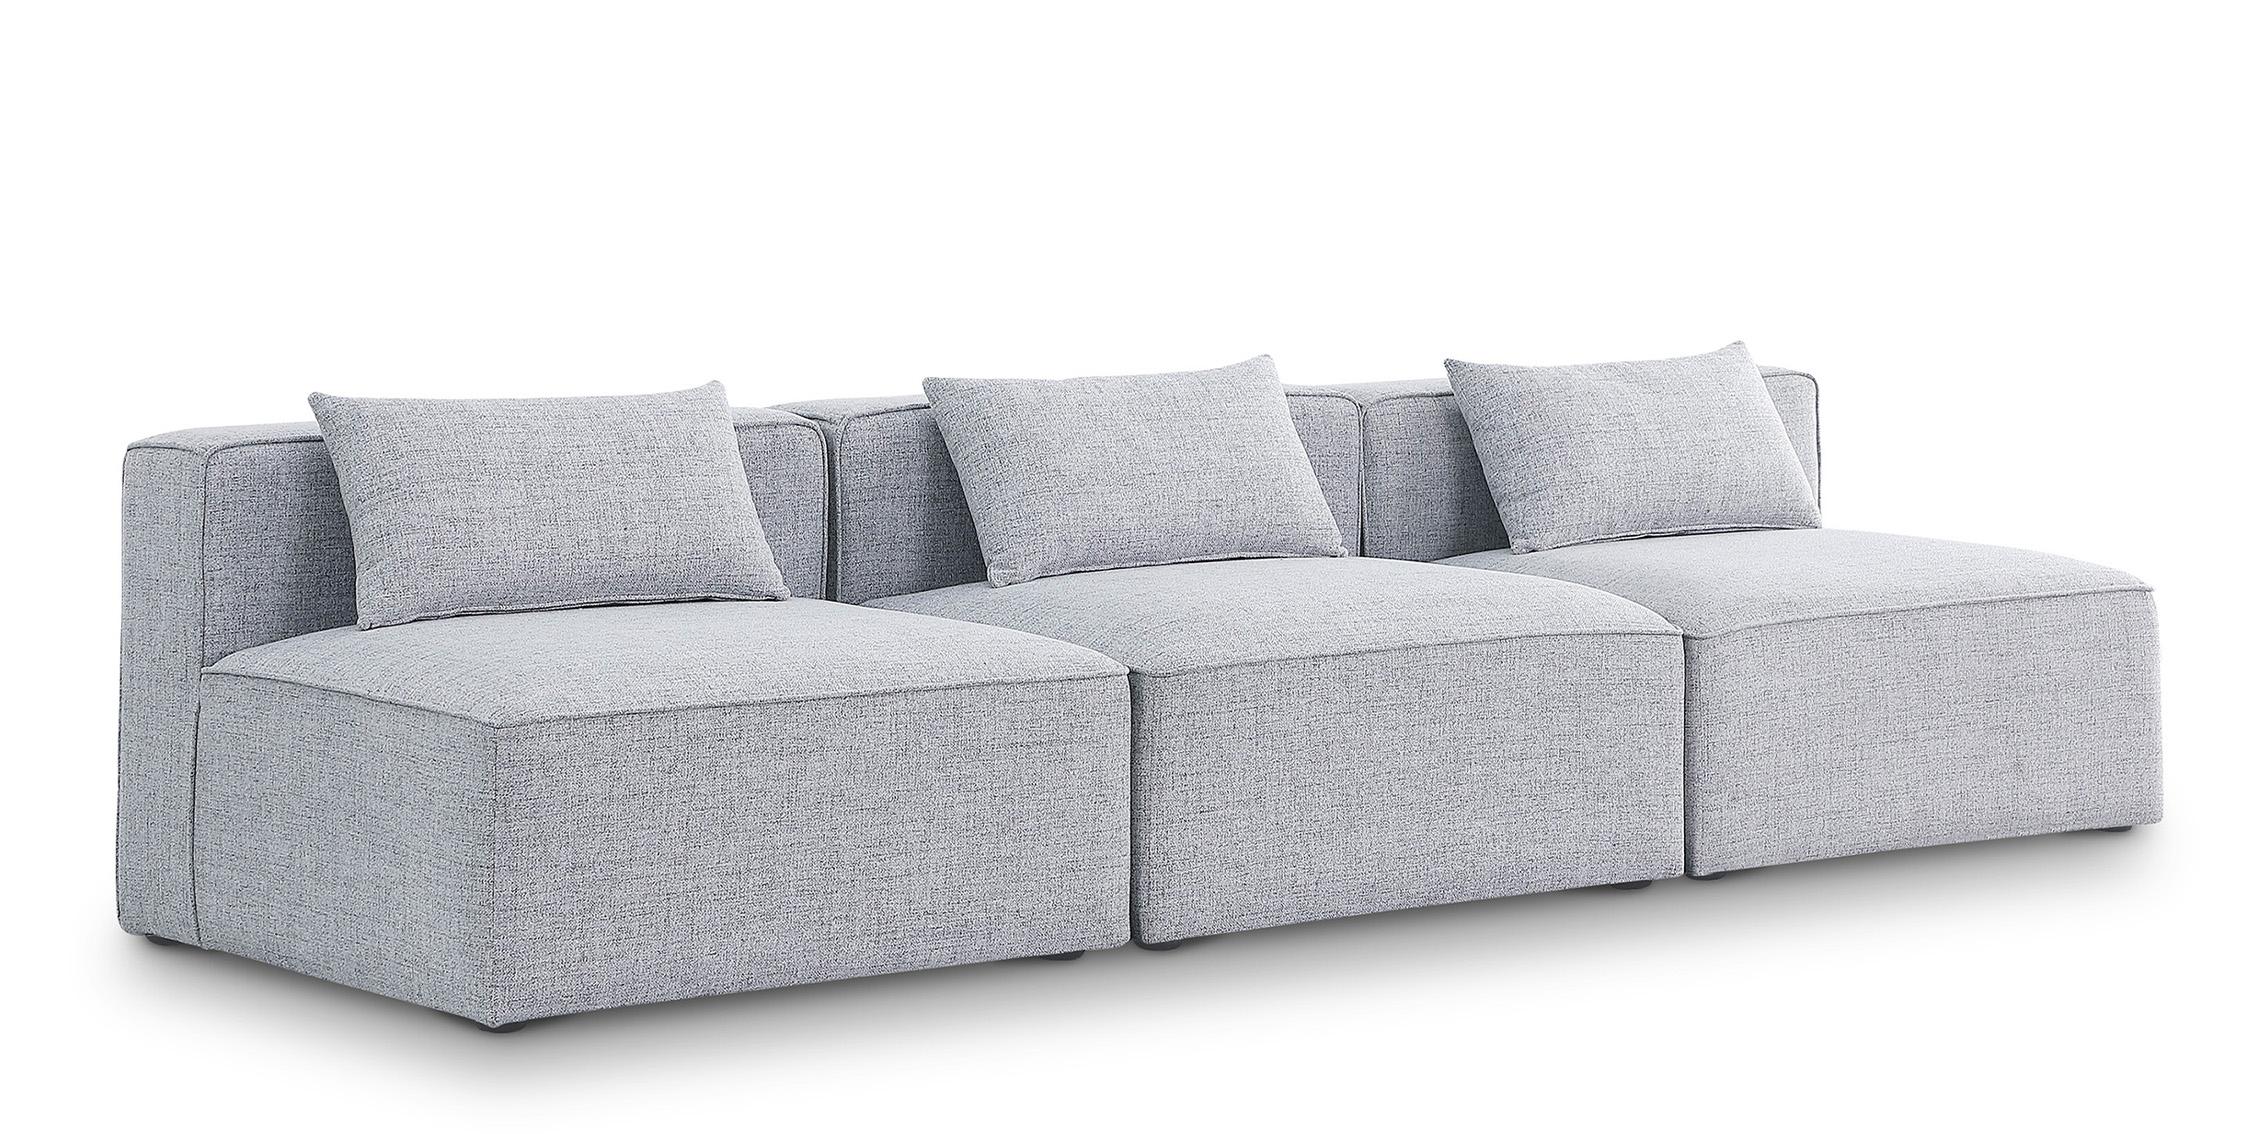 Contemporary, Modern Modular Sofa CUBE 630Grey-S108A 630Grey-S108A in Gray Linen